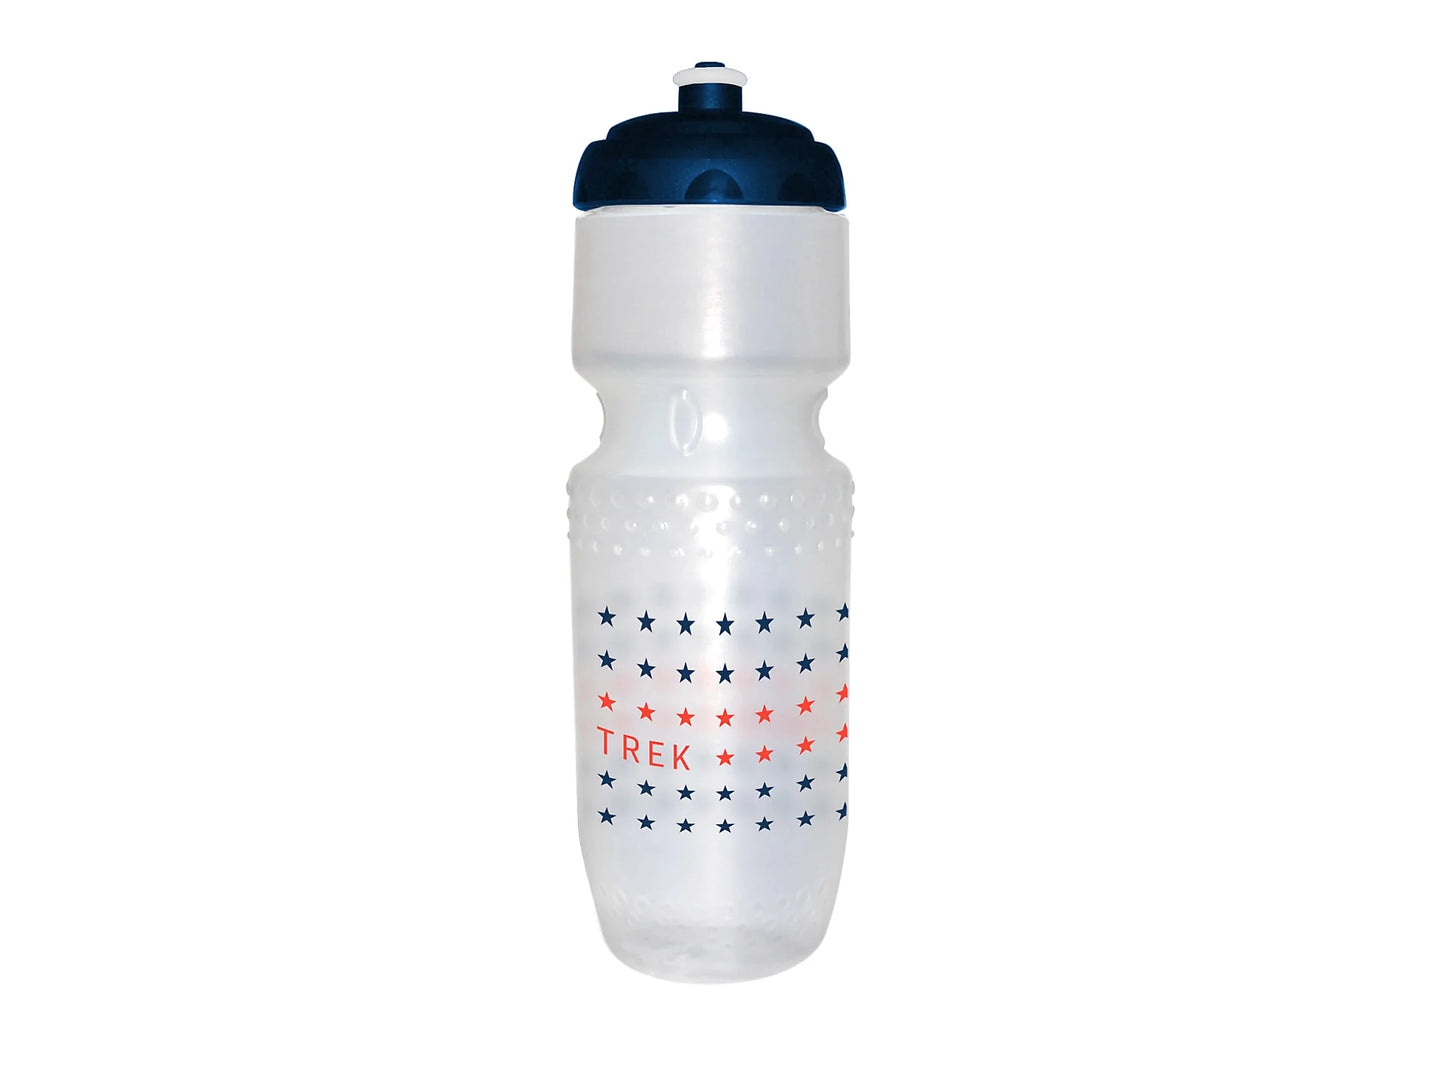 Trek Max Stars water bottle